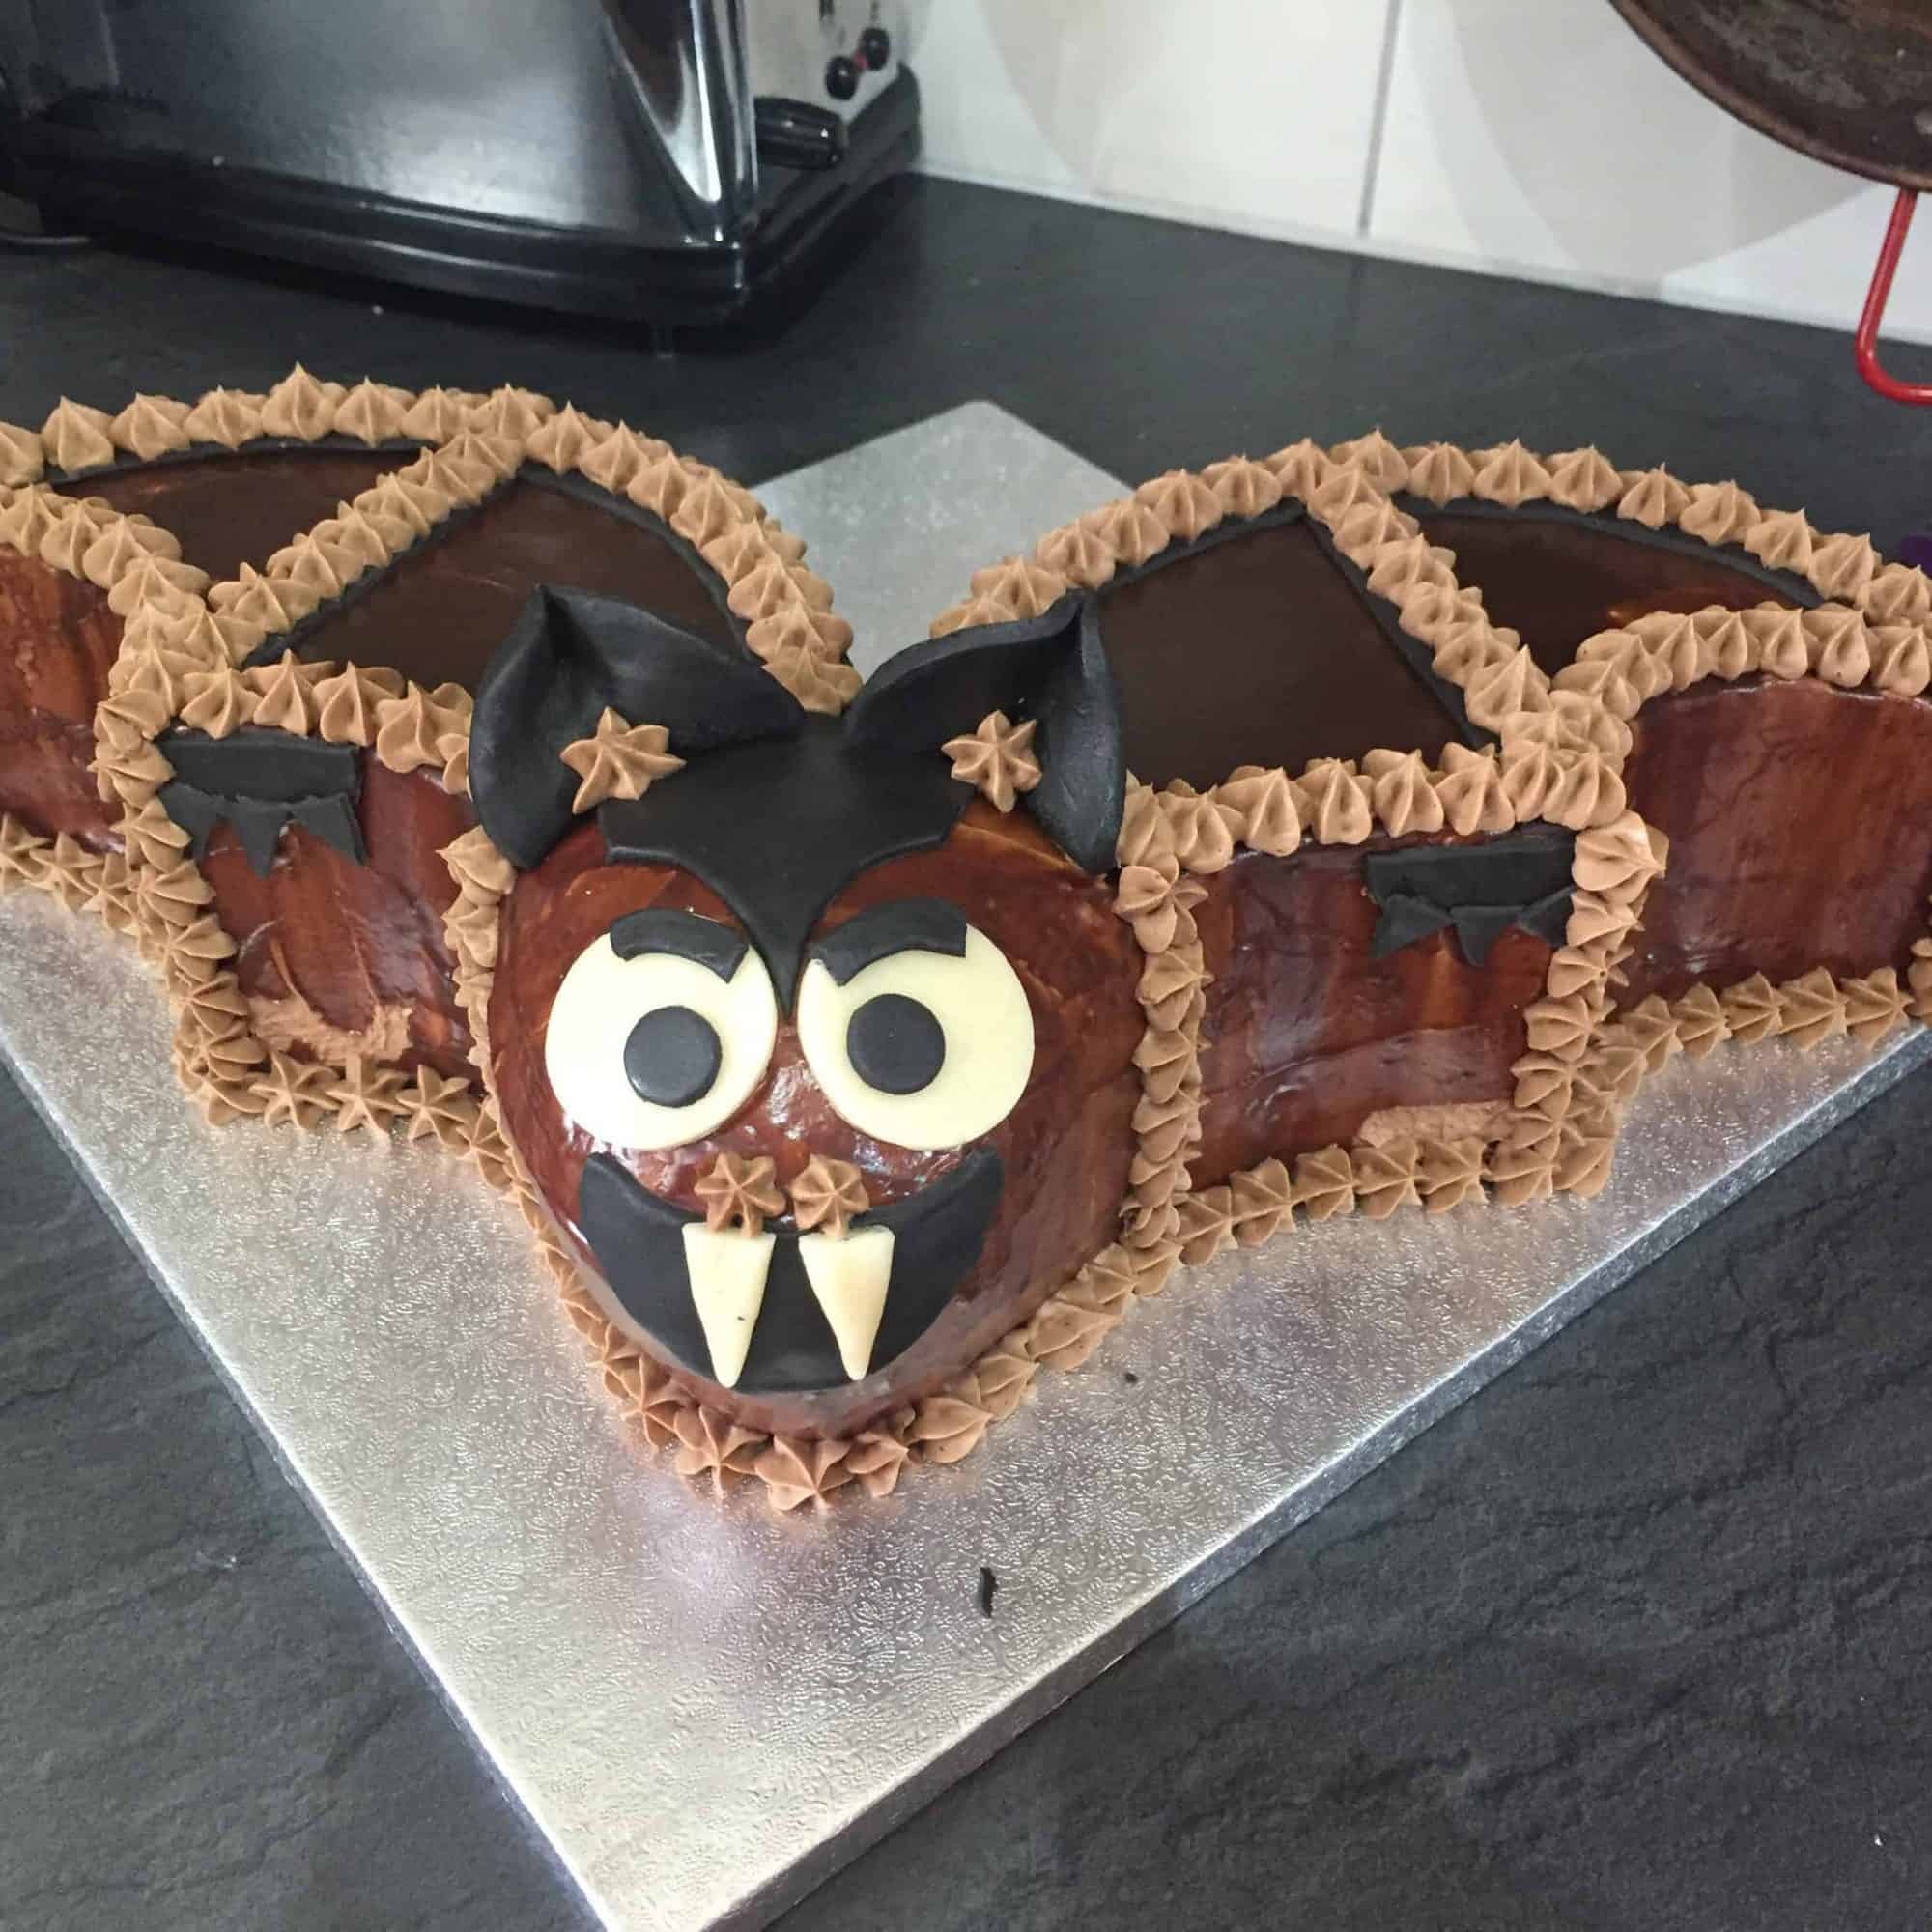 Bat birthday cake